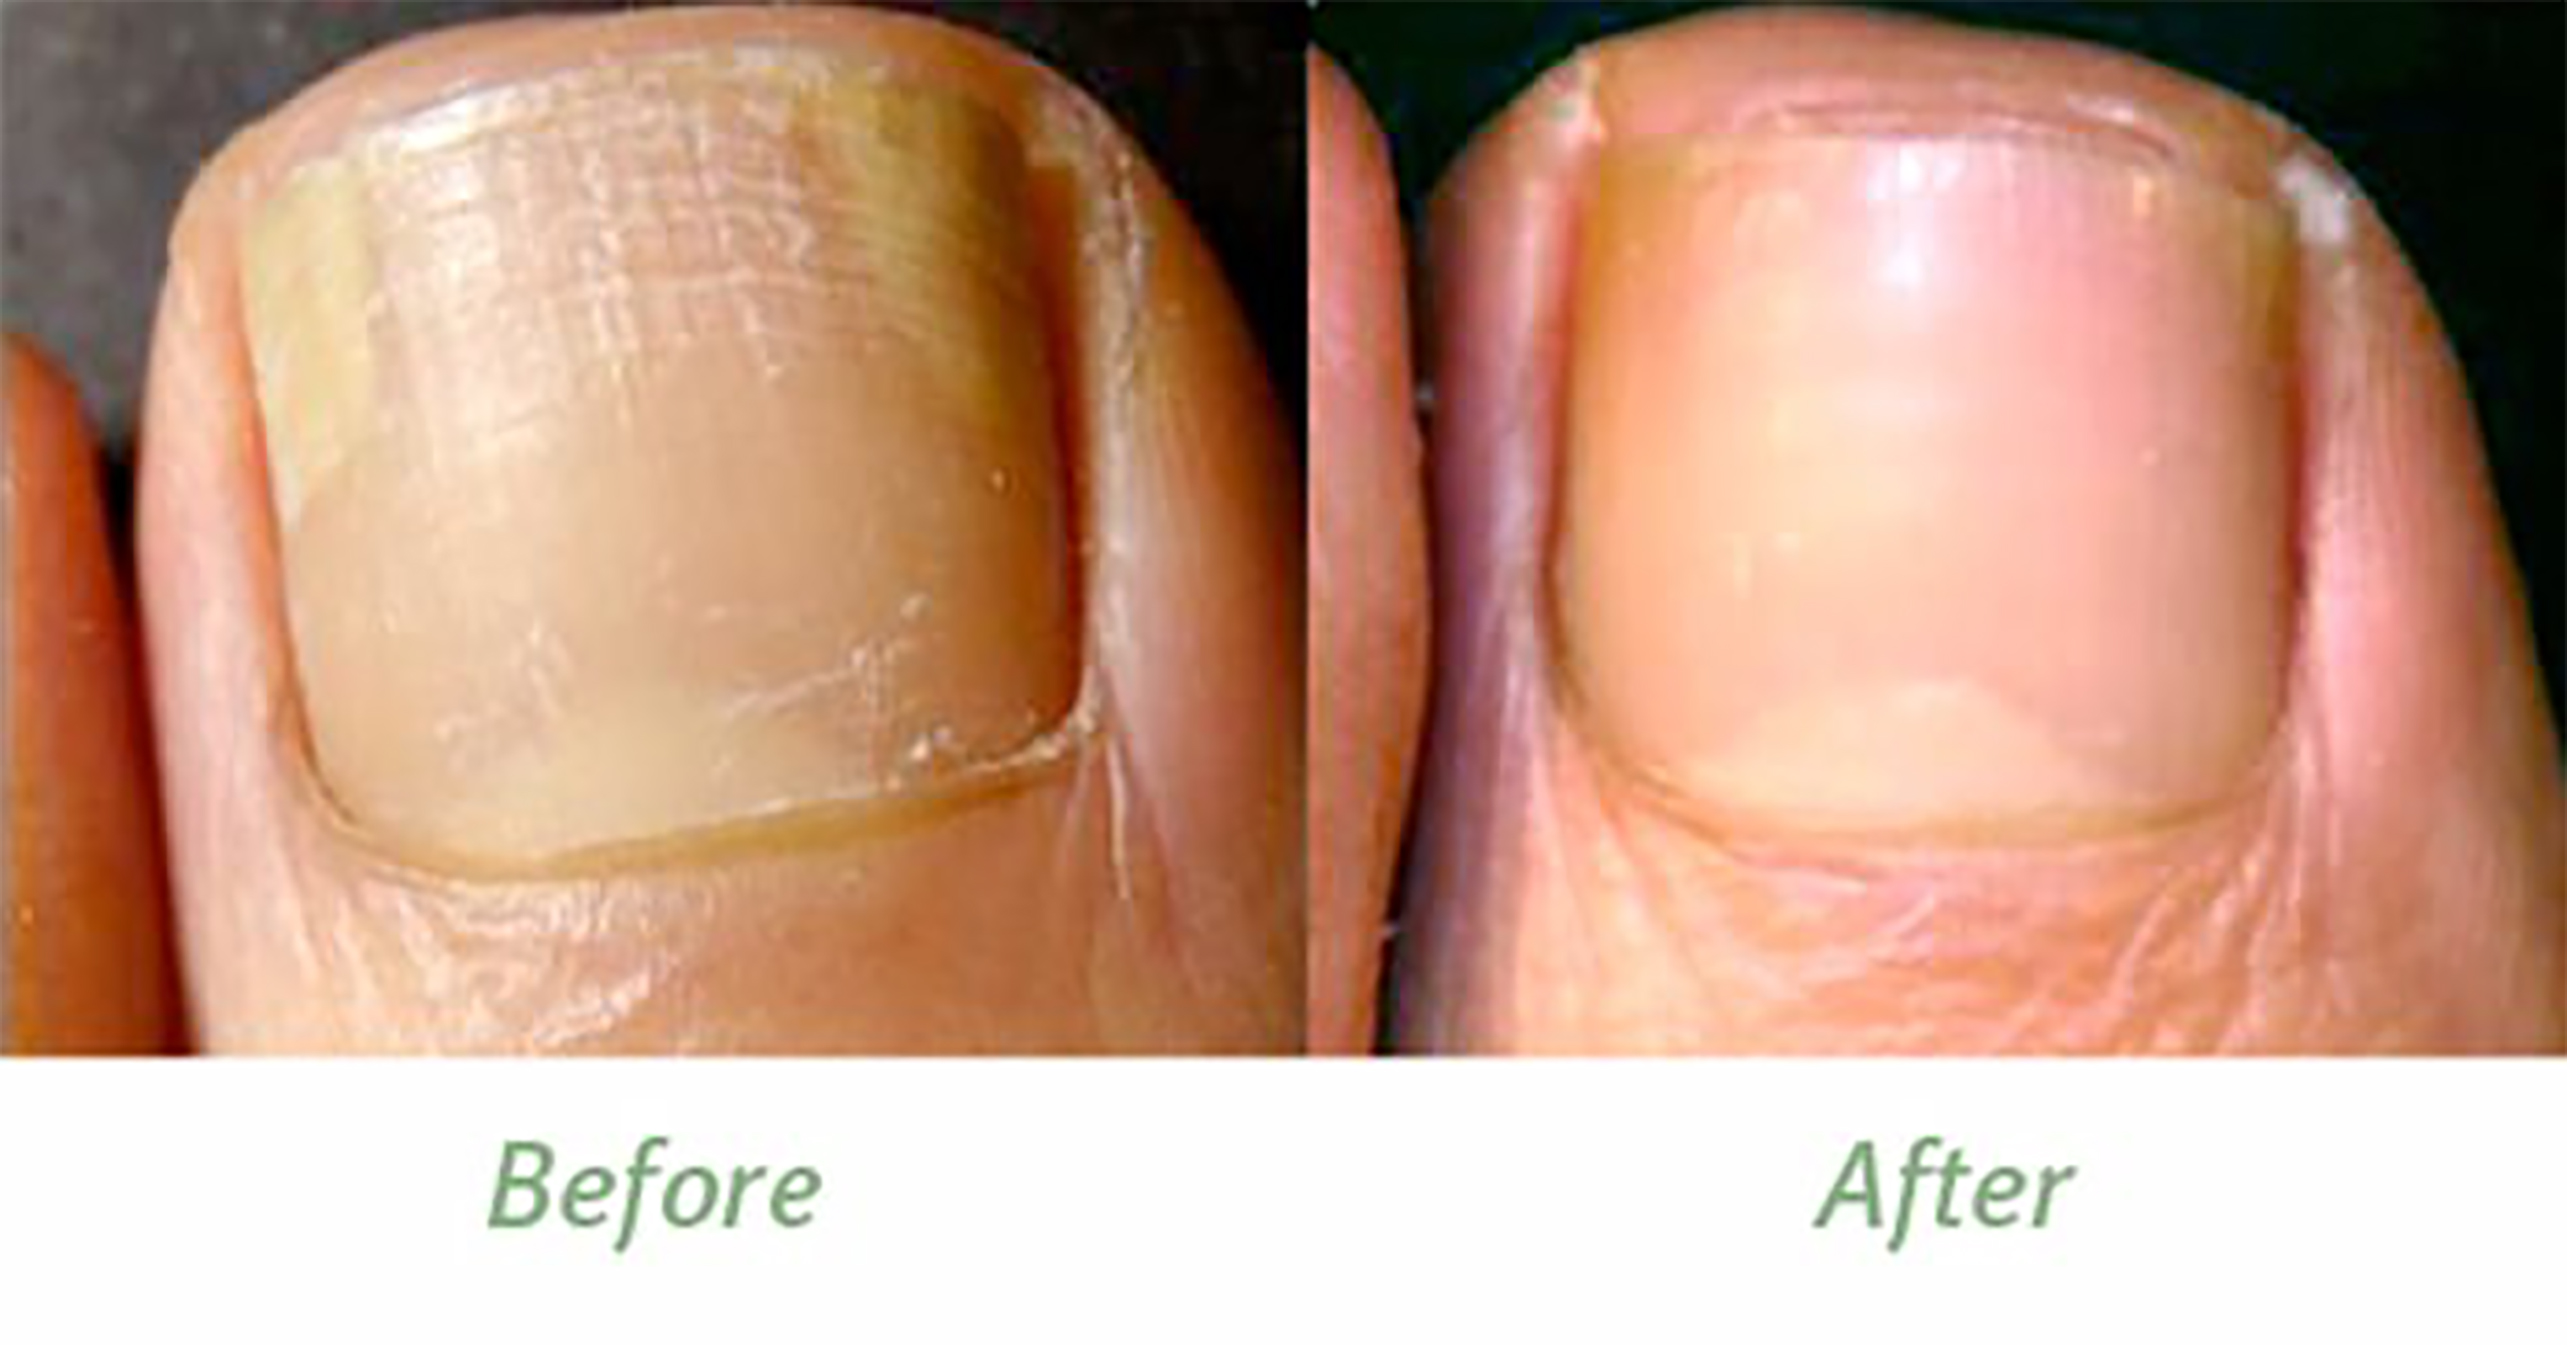 Ногти до и после лечения грибка фото.
